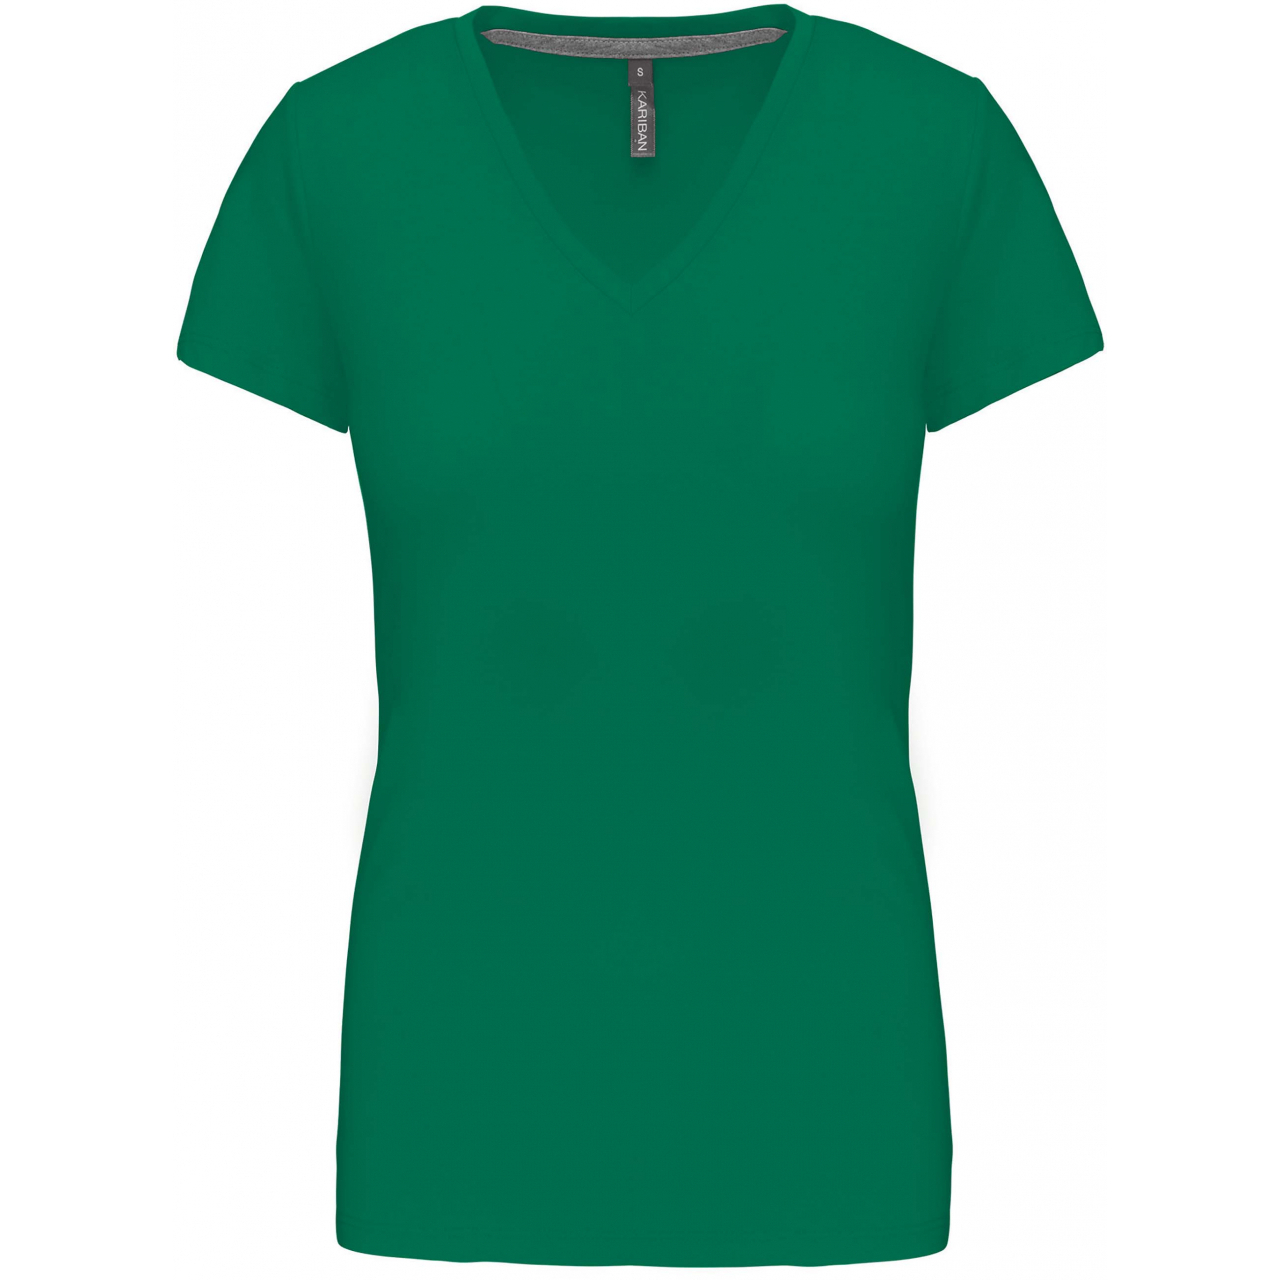 Dámské tričko Kariban V-neck s krátkým rukávem - zelené, L